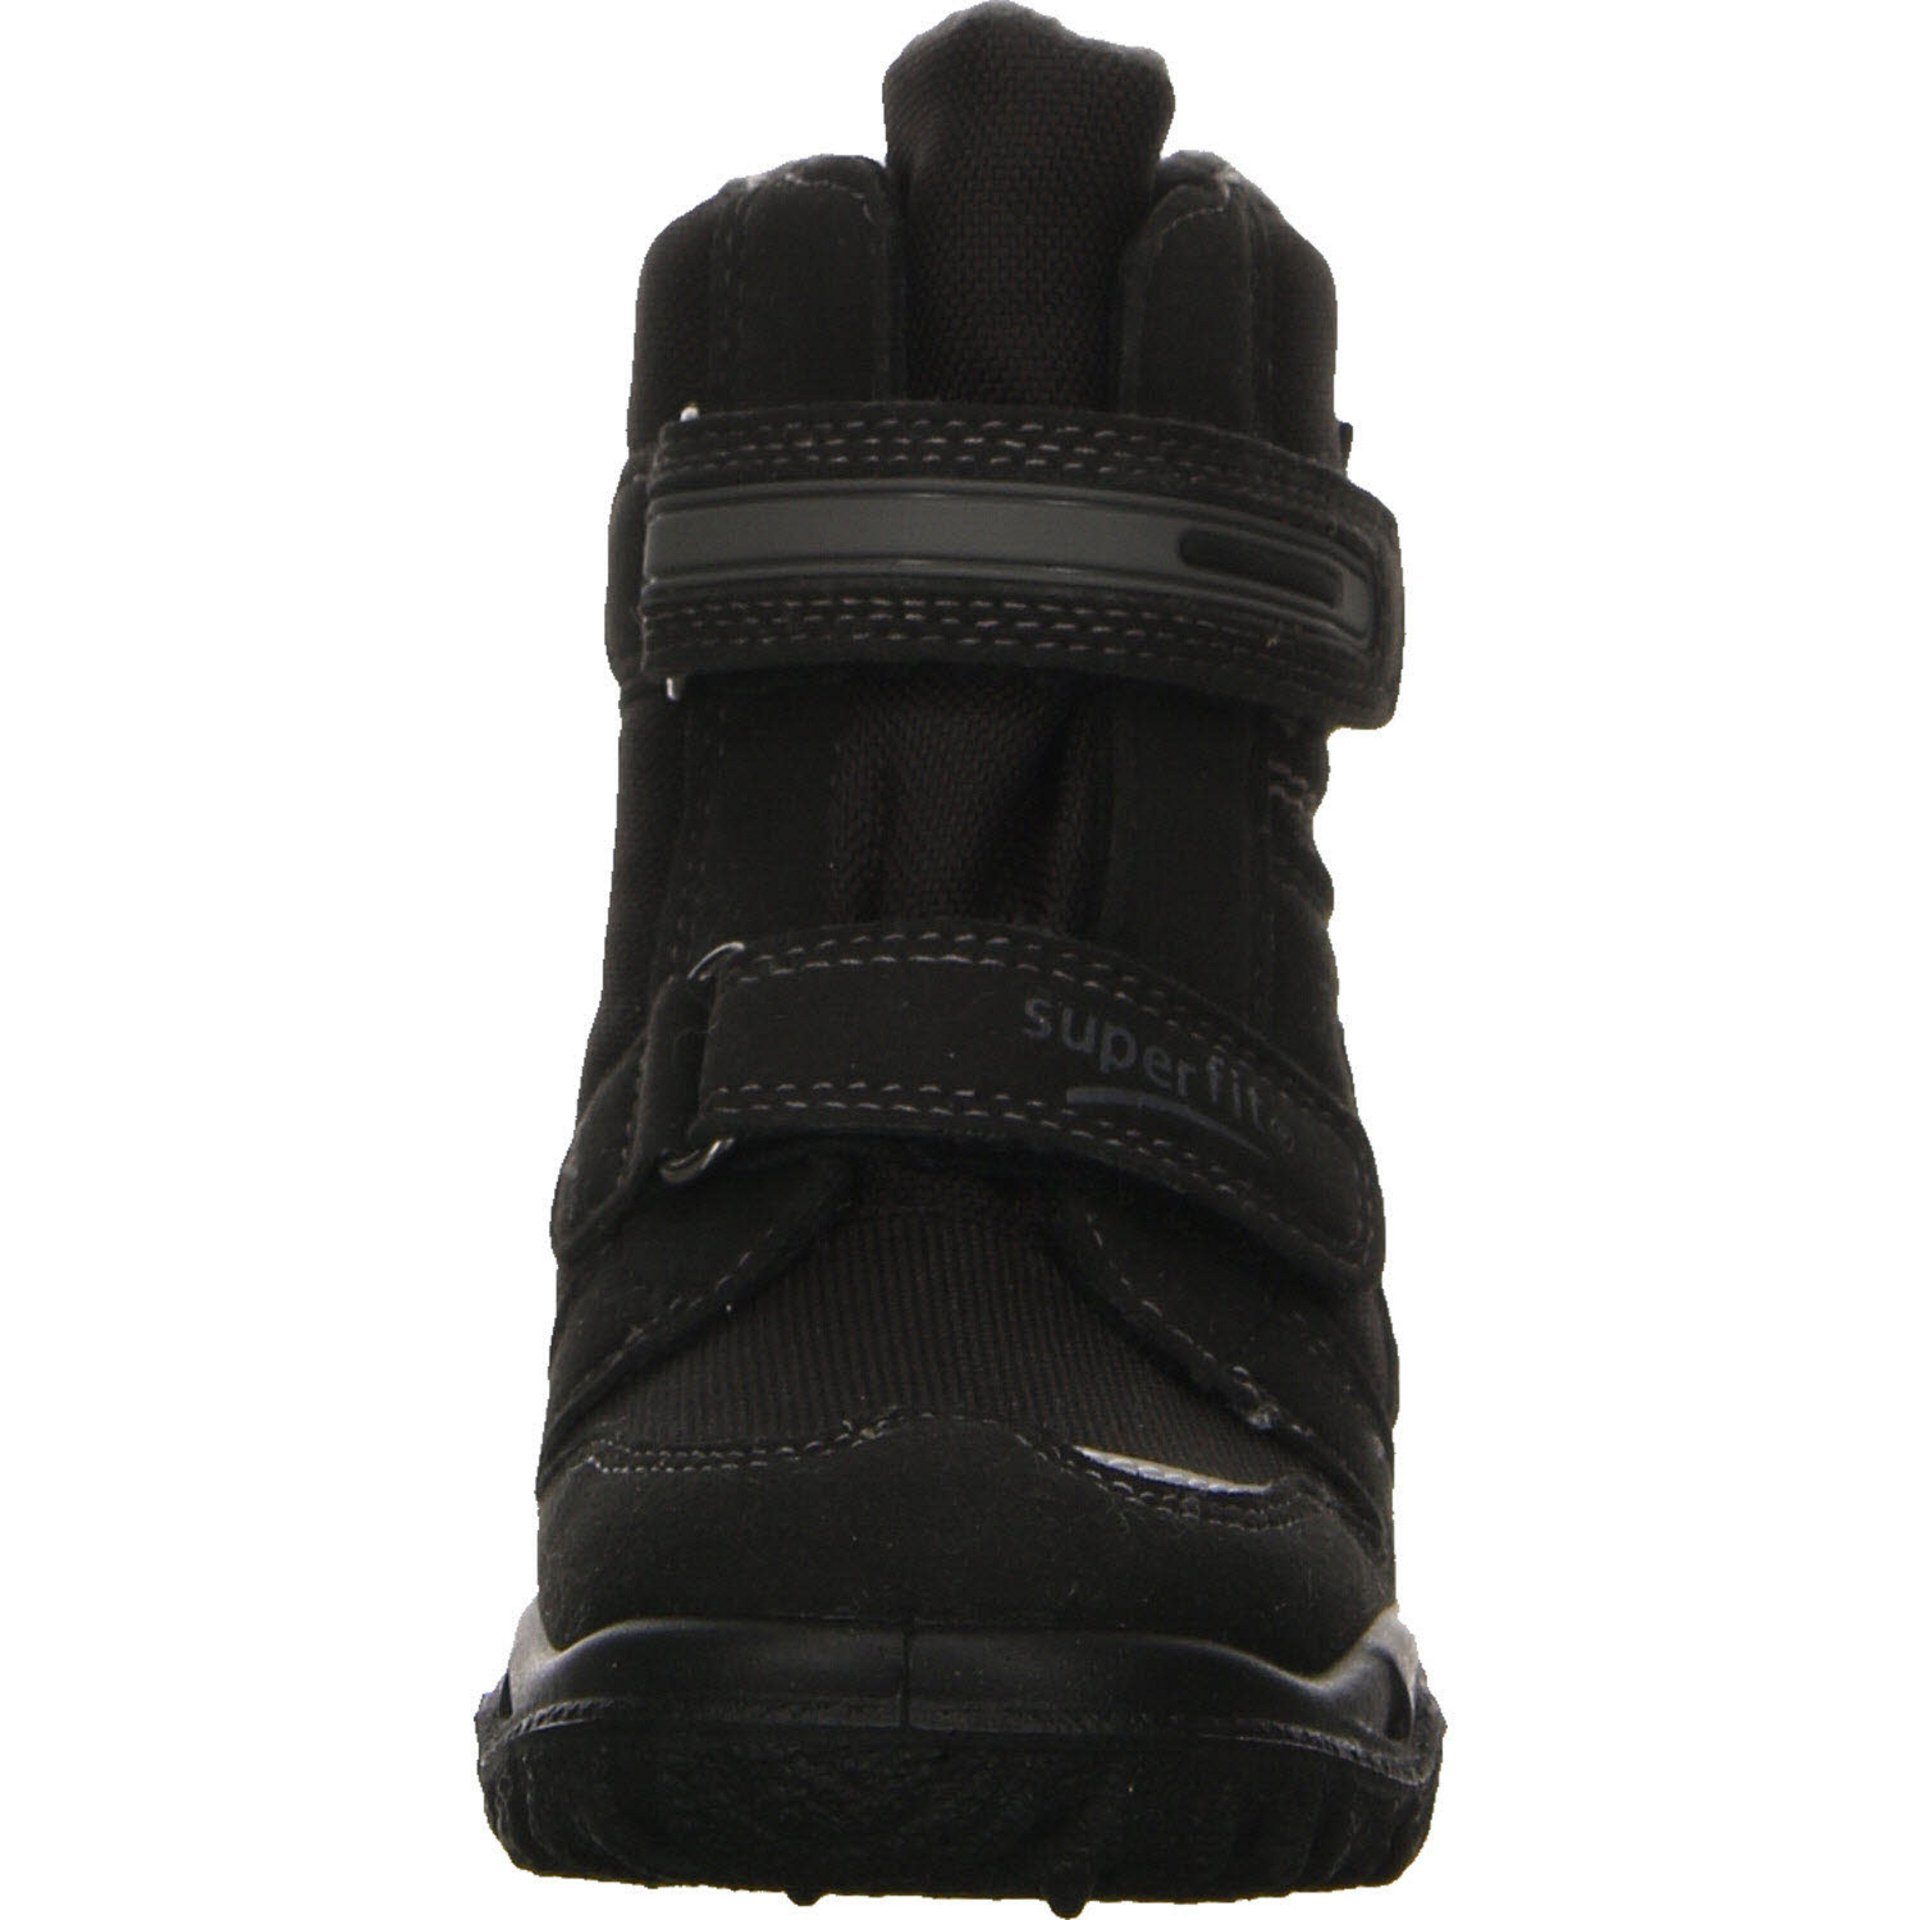 Superfit Jungen Stiefel Schuhe Husky 2 Gore-Tex Boots Stiefel Synthetikkombination schwarz grau